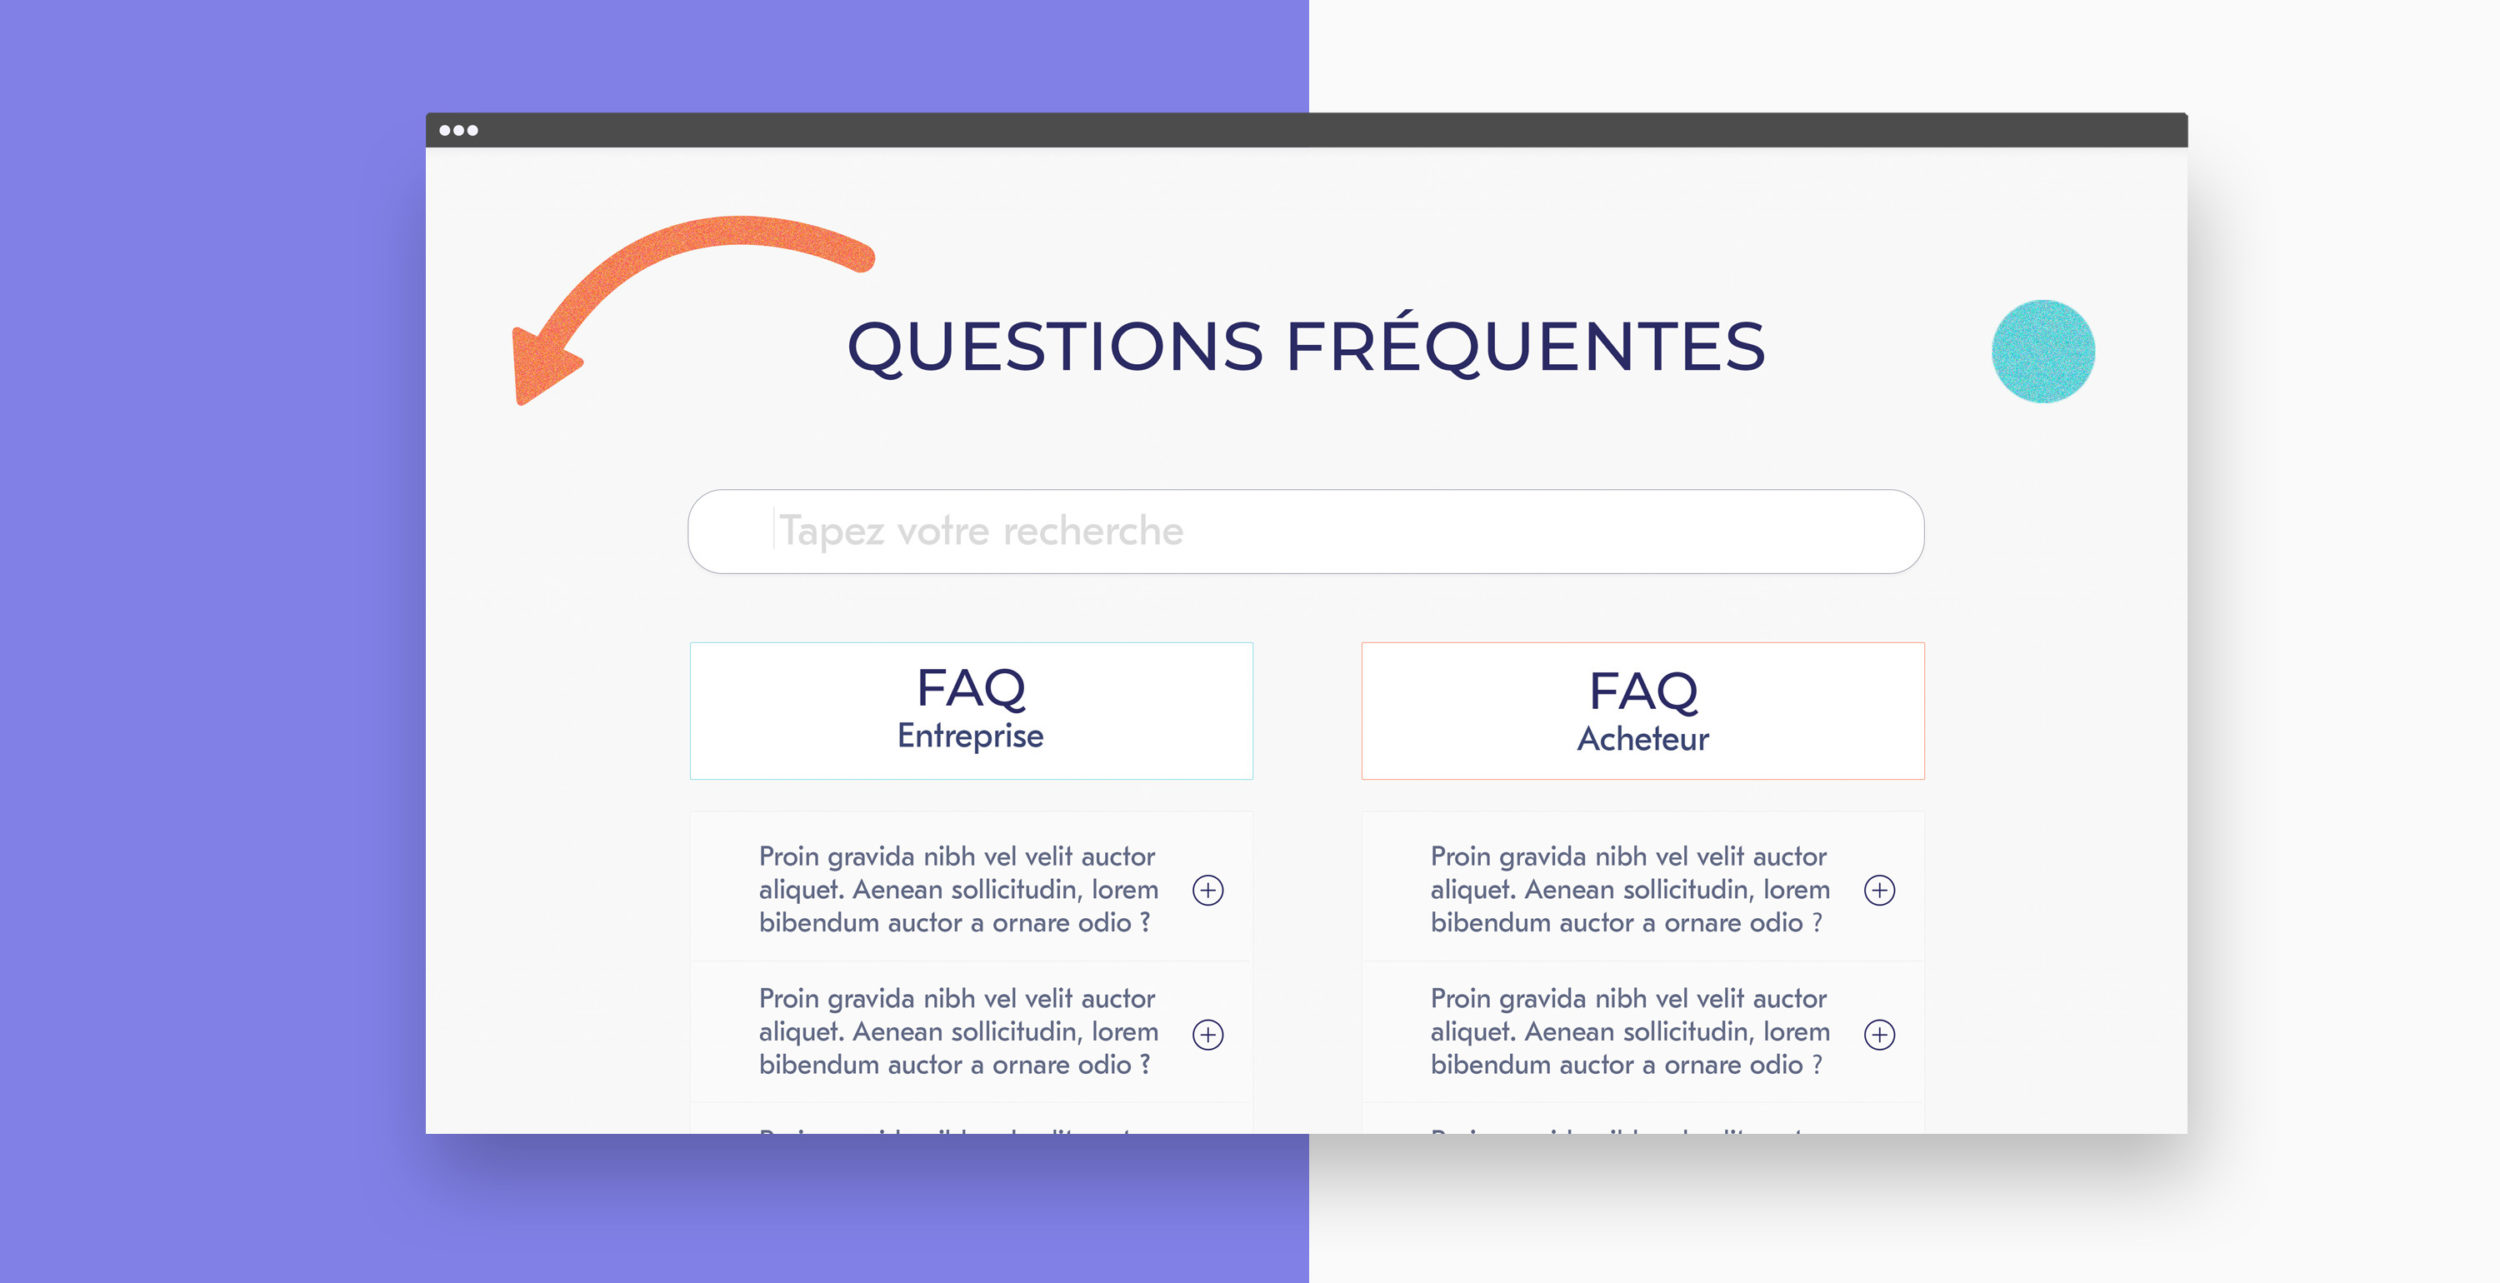 webdesign FAQ site la commande publique - alles klar studio de design graphique lyon